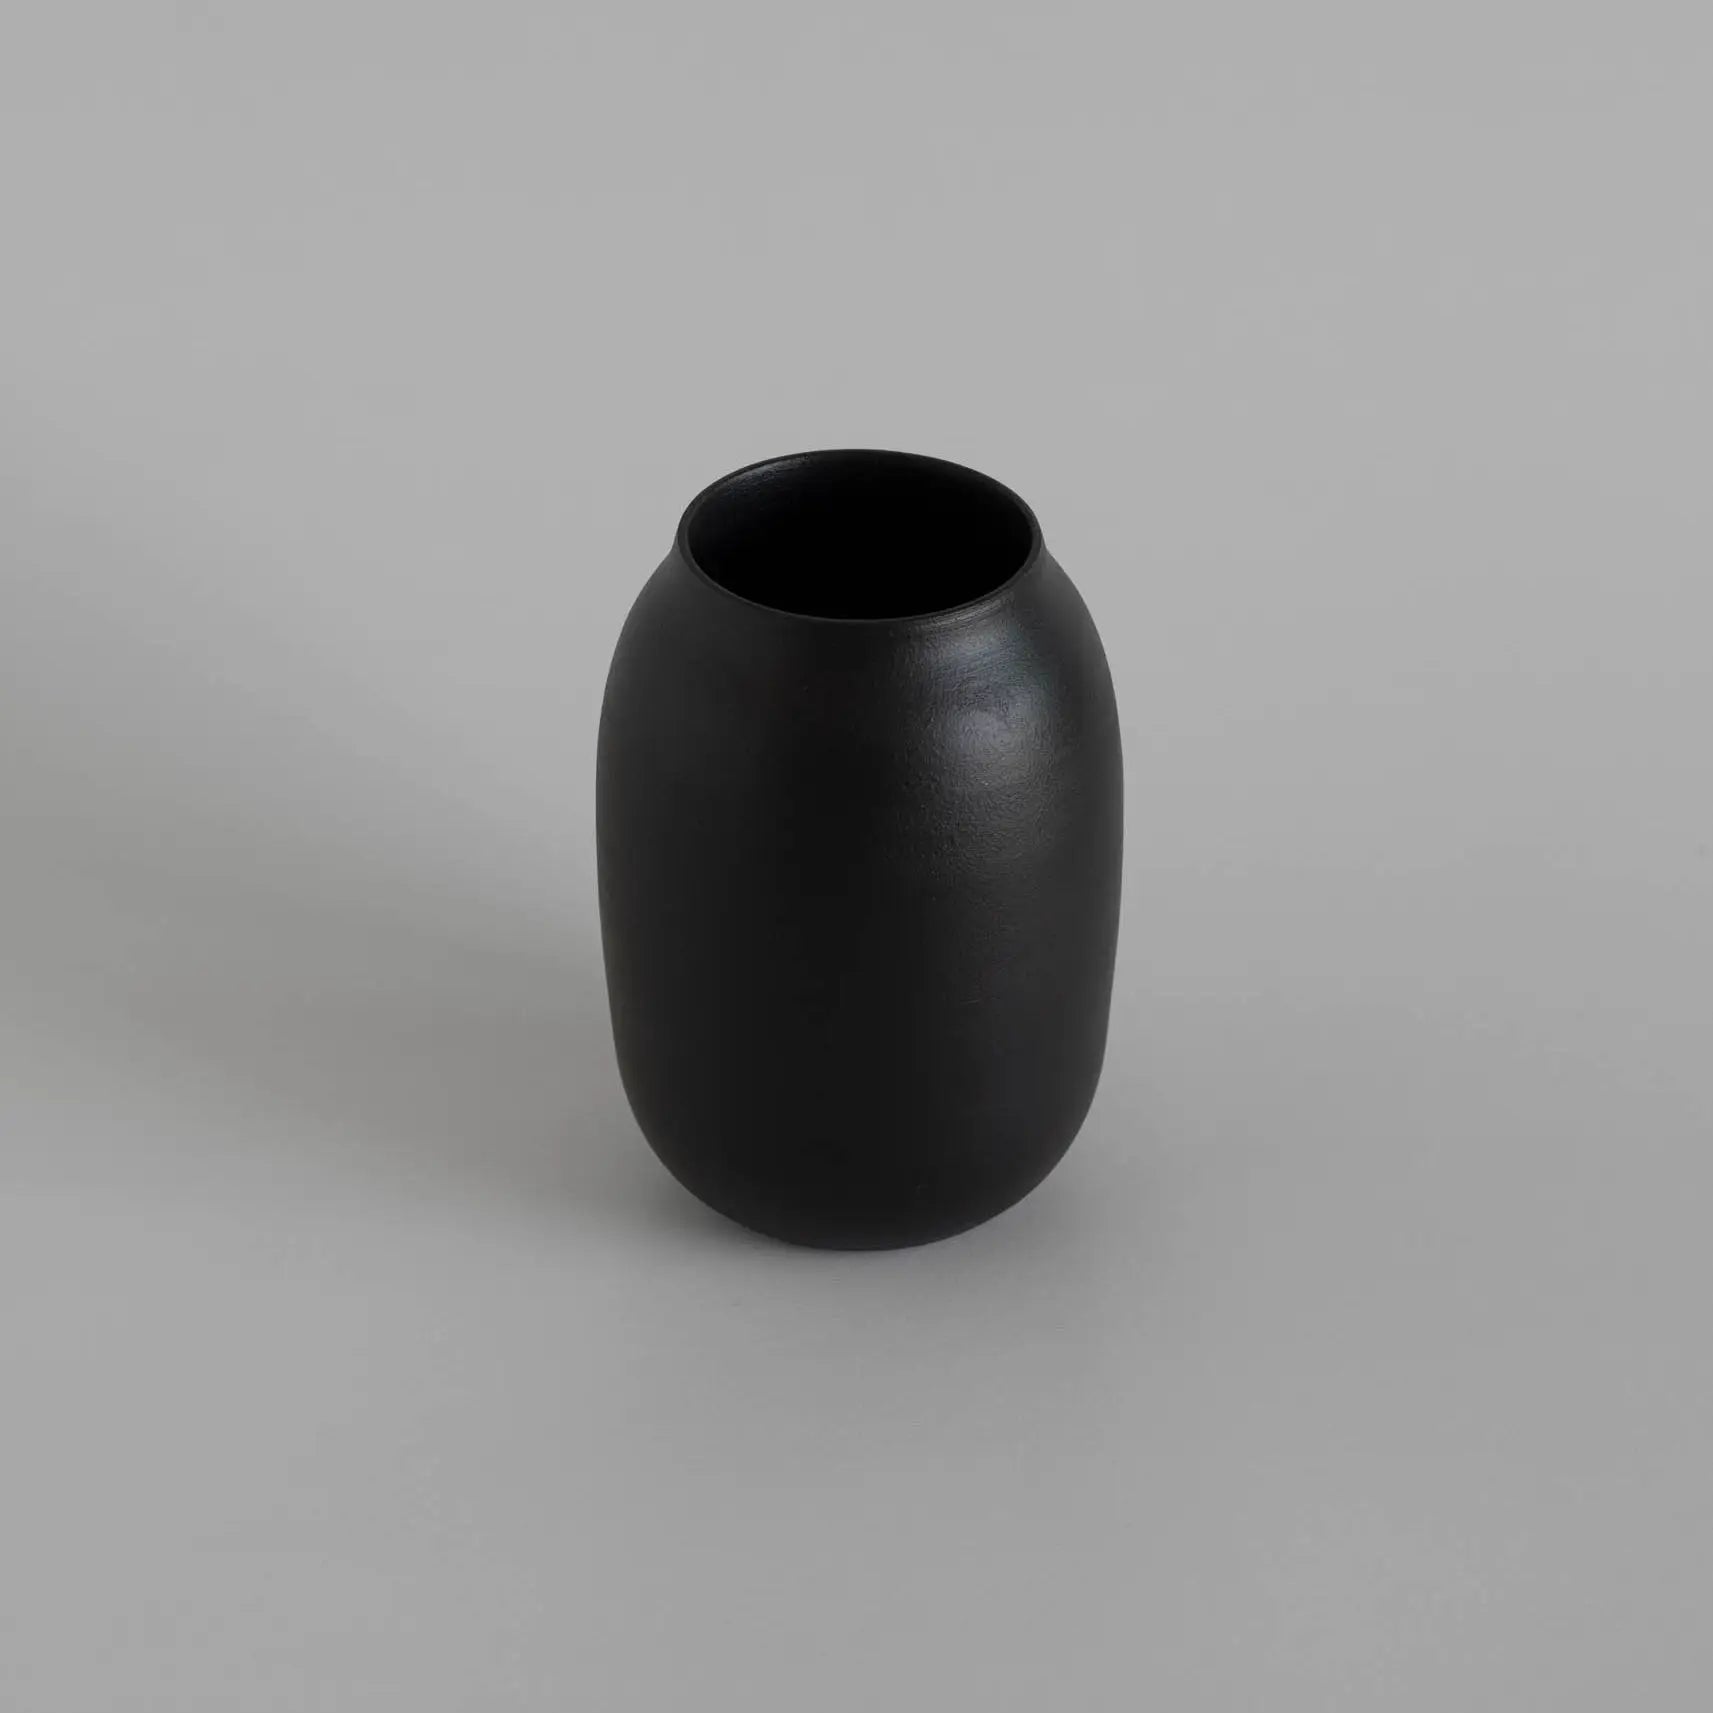 Black Vase Made in Portugal